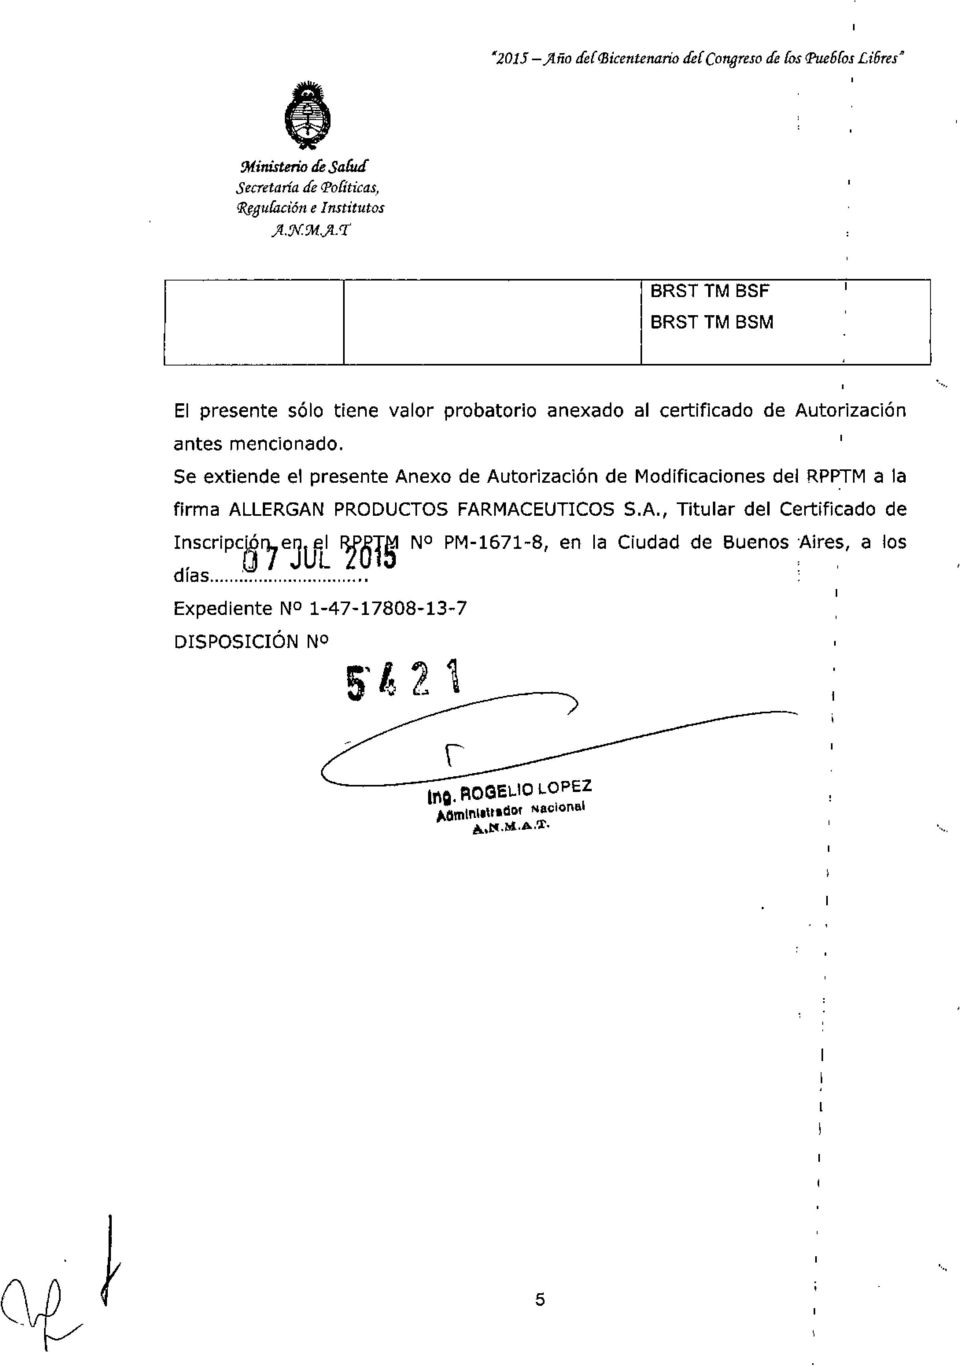 Se extiende el presente Anexo de Autorización de Modificaciones del RP~M a la firma ALLERGAN PROOUCTOSFARMACEUTCOSS.A. ~ol~ Titular del Certificado de l~scripc~'7ejlj~ N PM-1671-S en la Ciudad de Buenos Aires a los d las :.